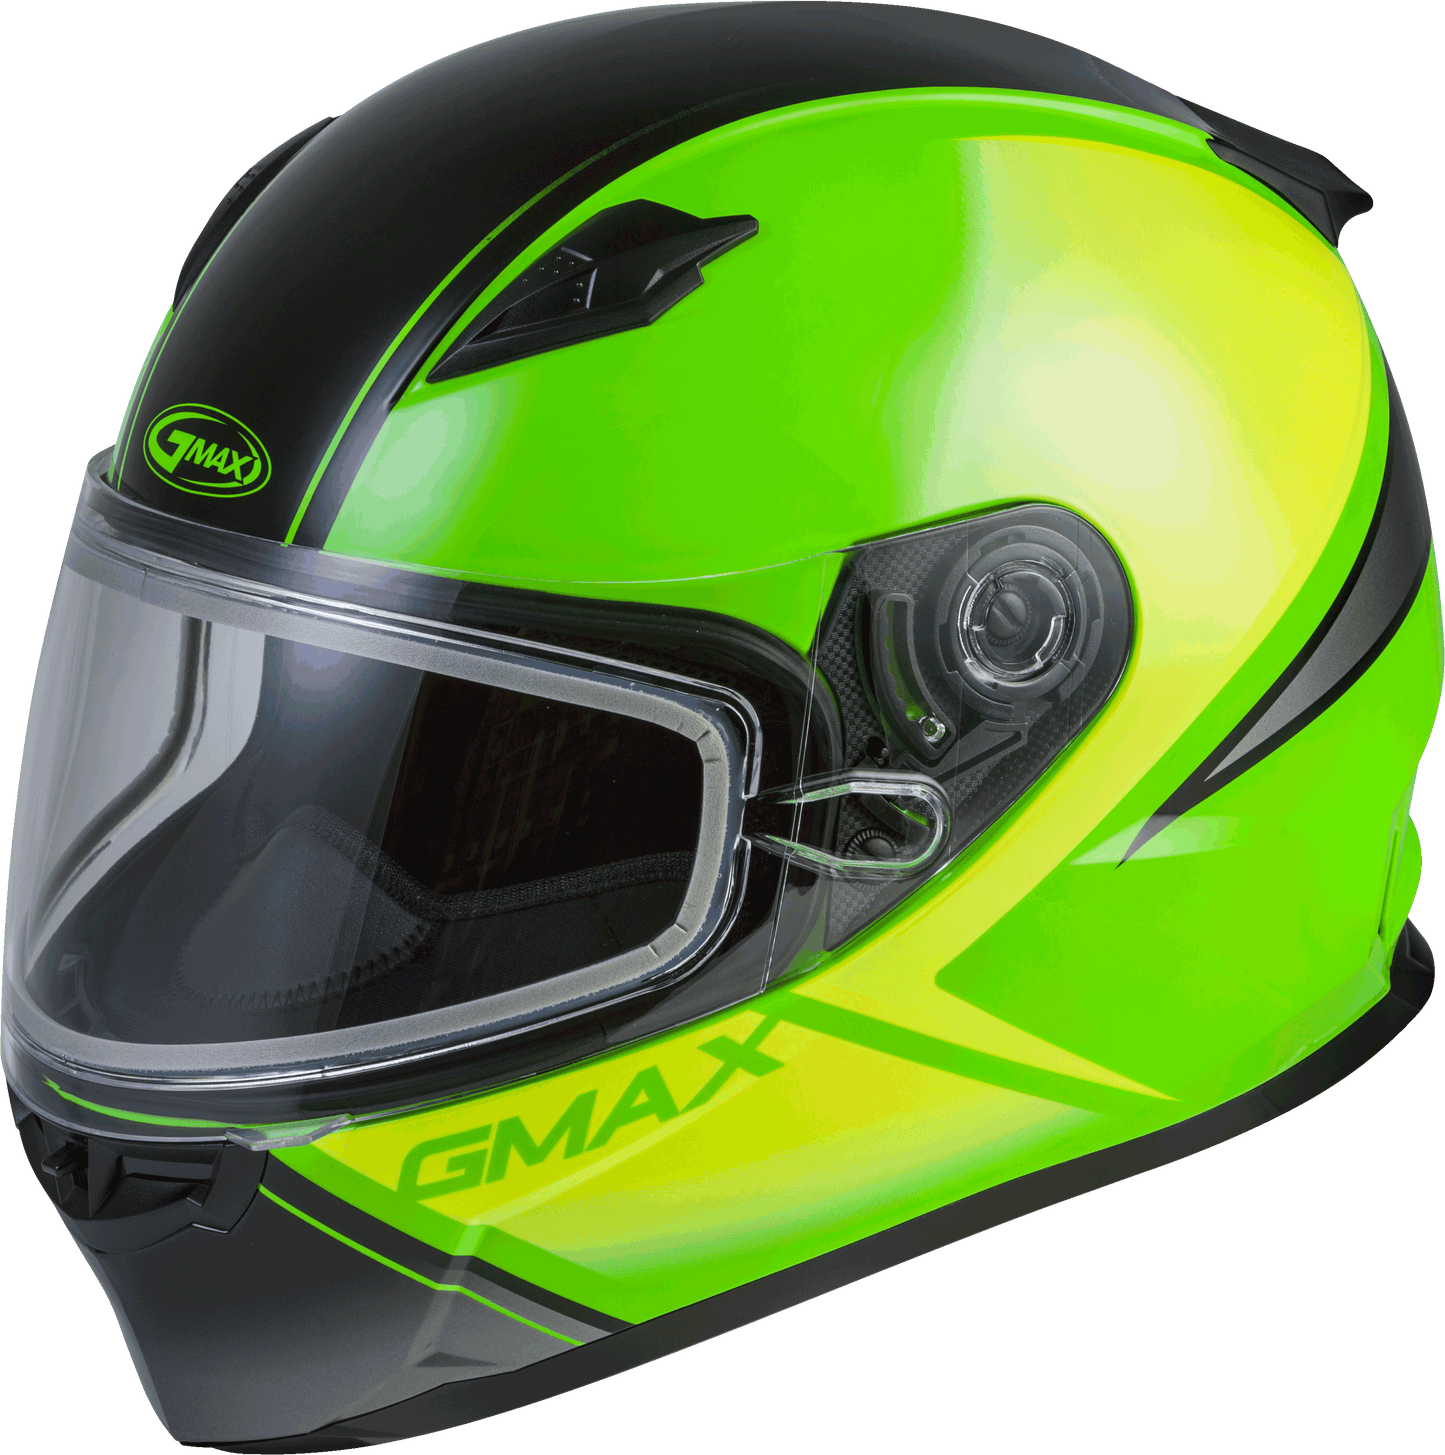 Gmax 72-6334 FF-49S 'Hail' Full-Face Snow Helmet Neon Grn/Hi-Vis/Blk